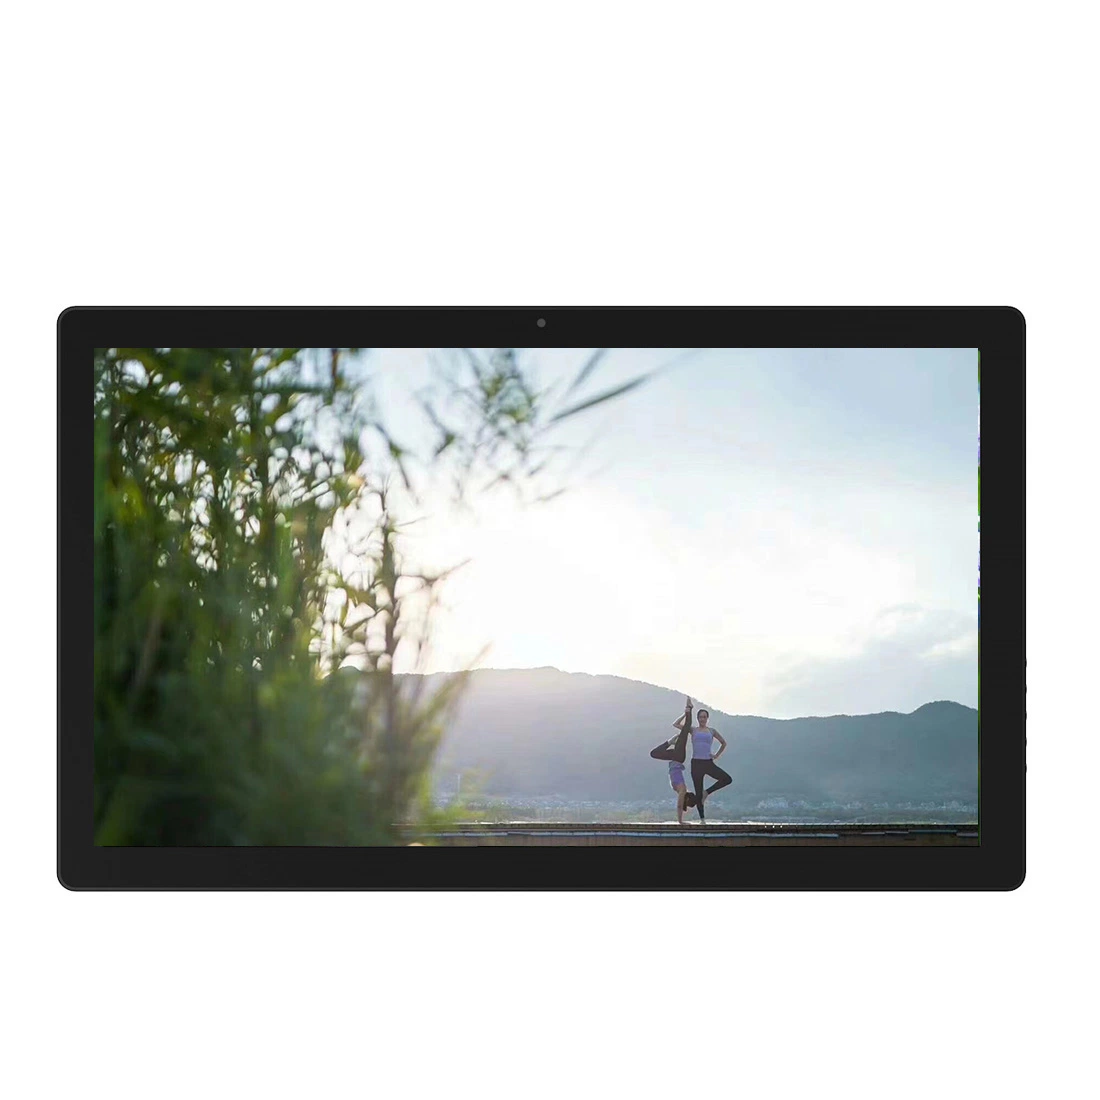 Utilisation durable 100% testé écran tactile capacitif de 21.5 pouces Téléphone portable écran du numériseur Remplacement écran LCD panneau publicitaire